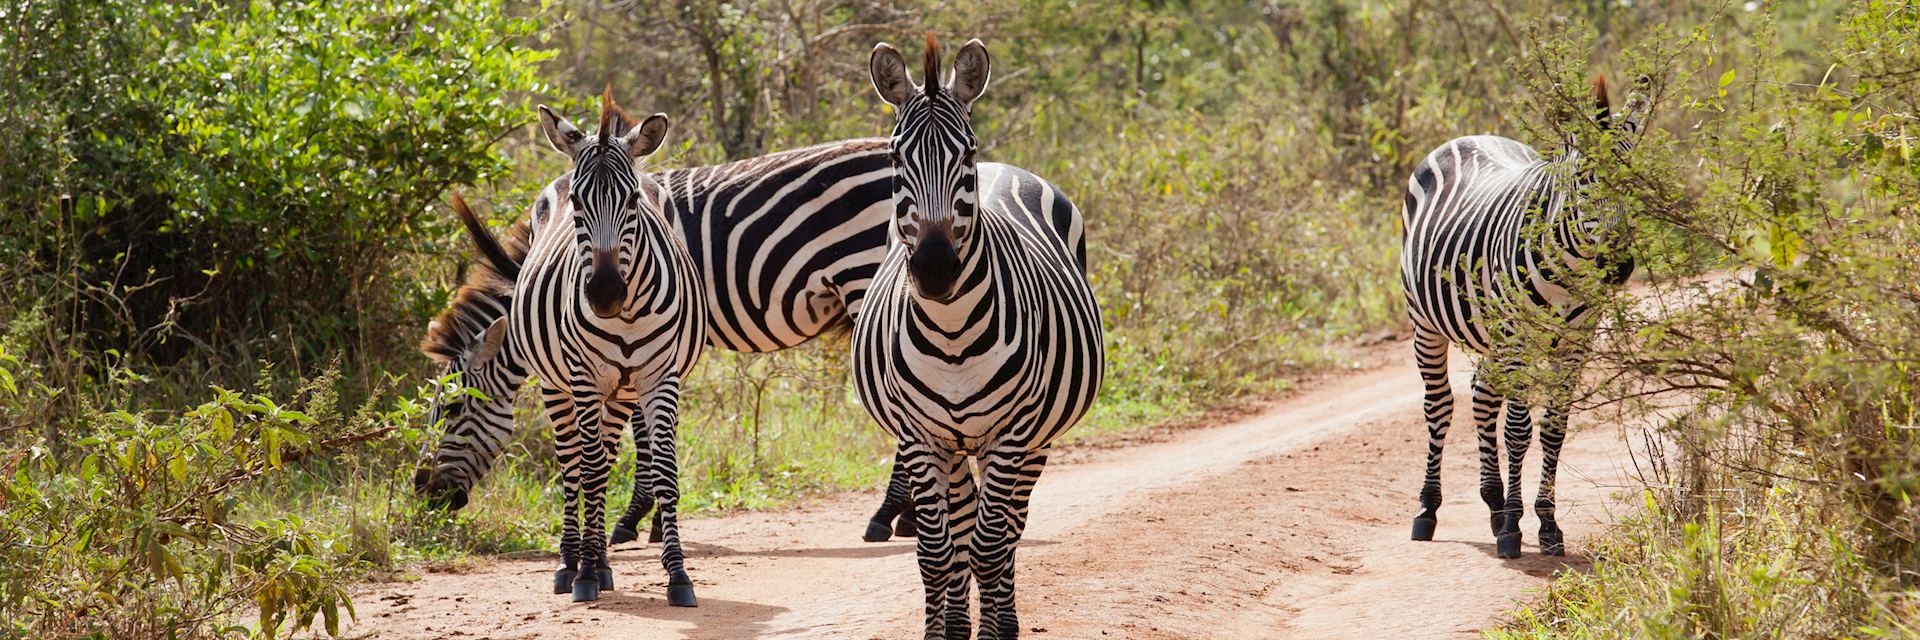 Zebra in Lake Mburo National Park